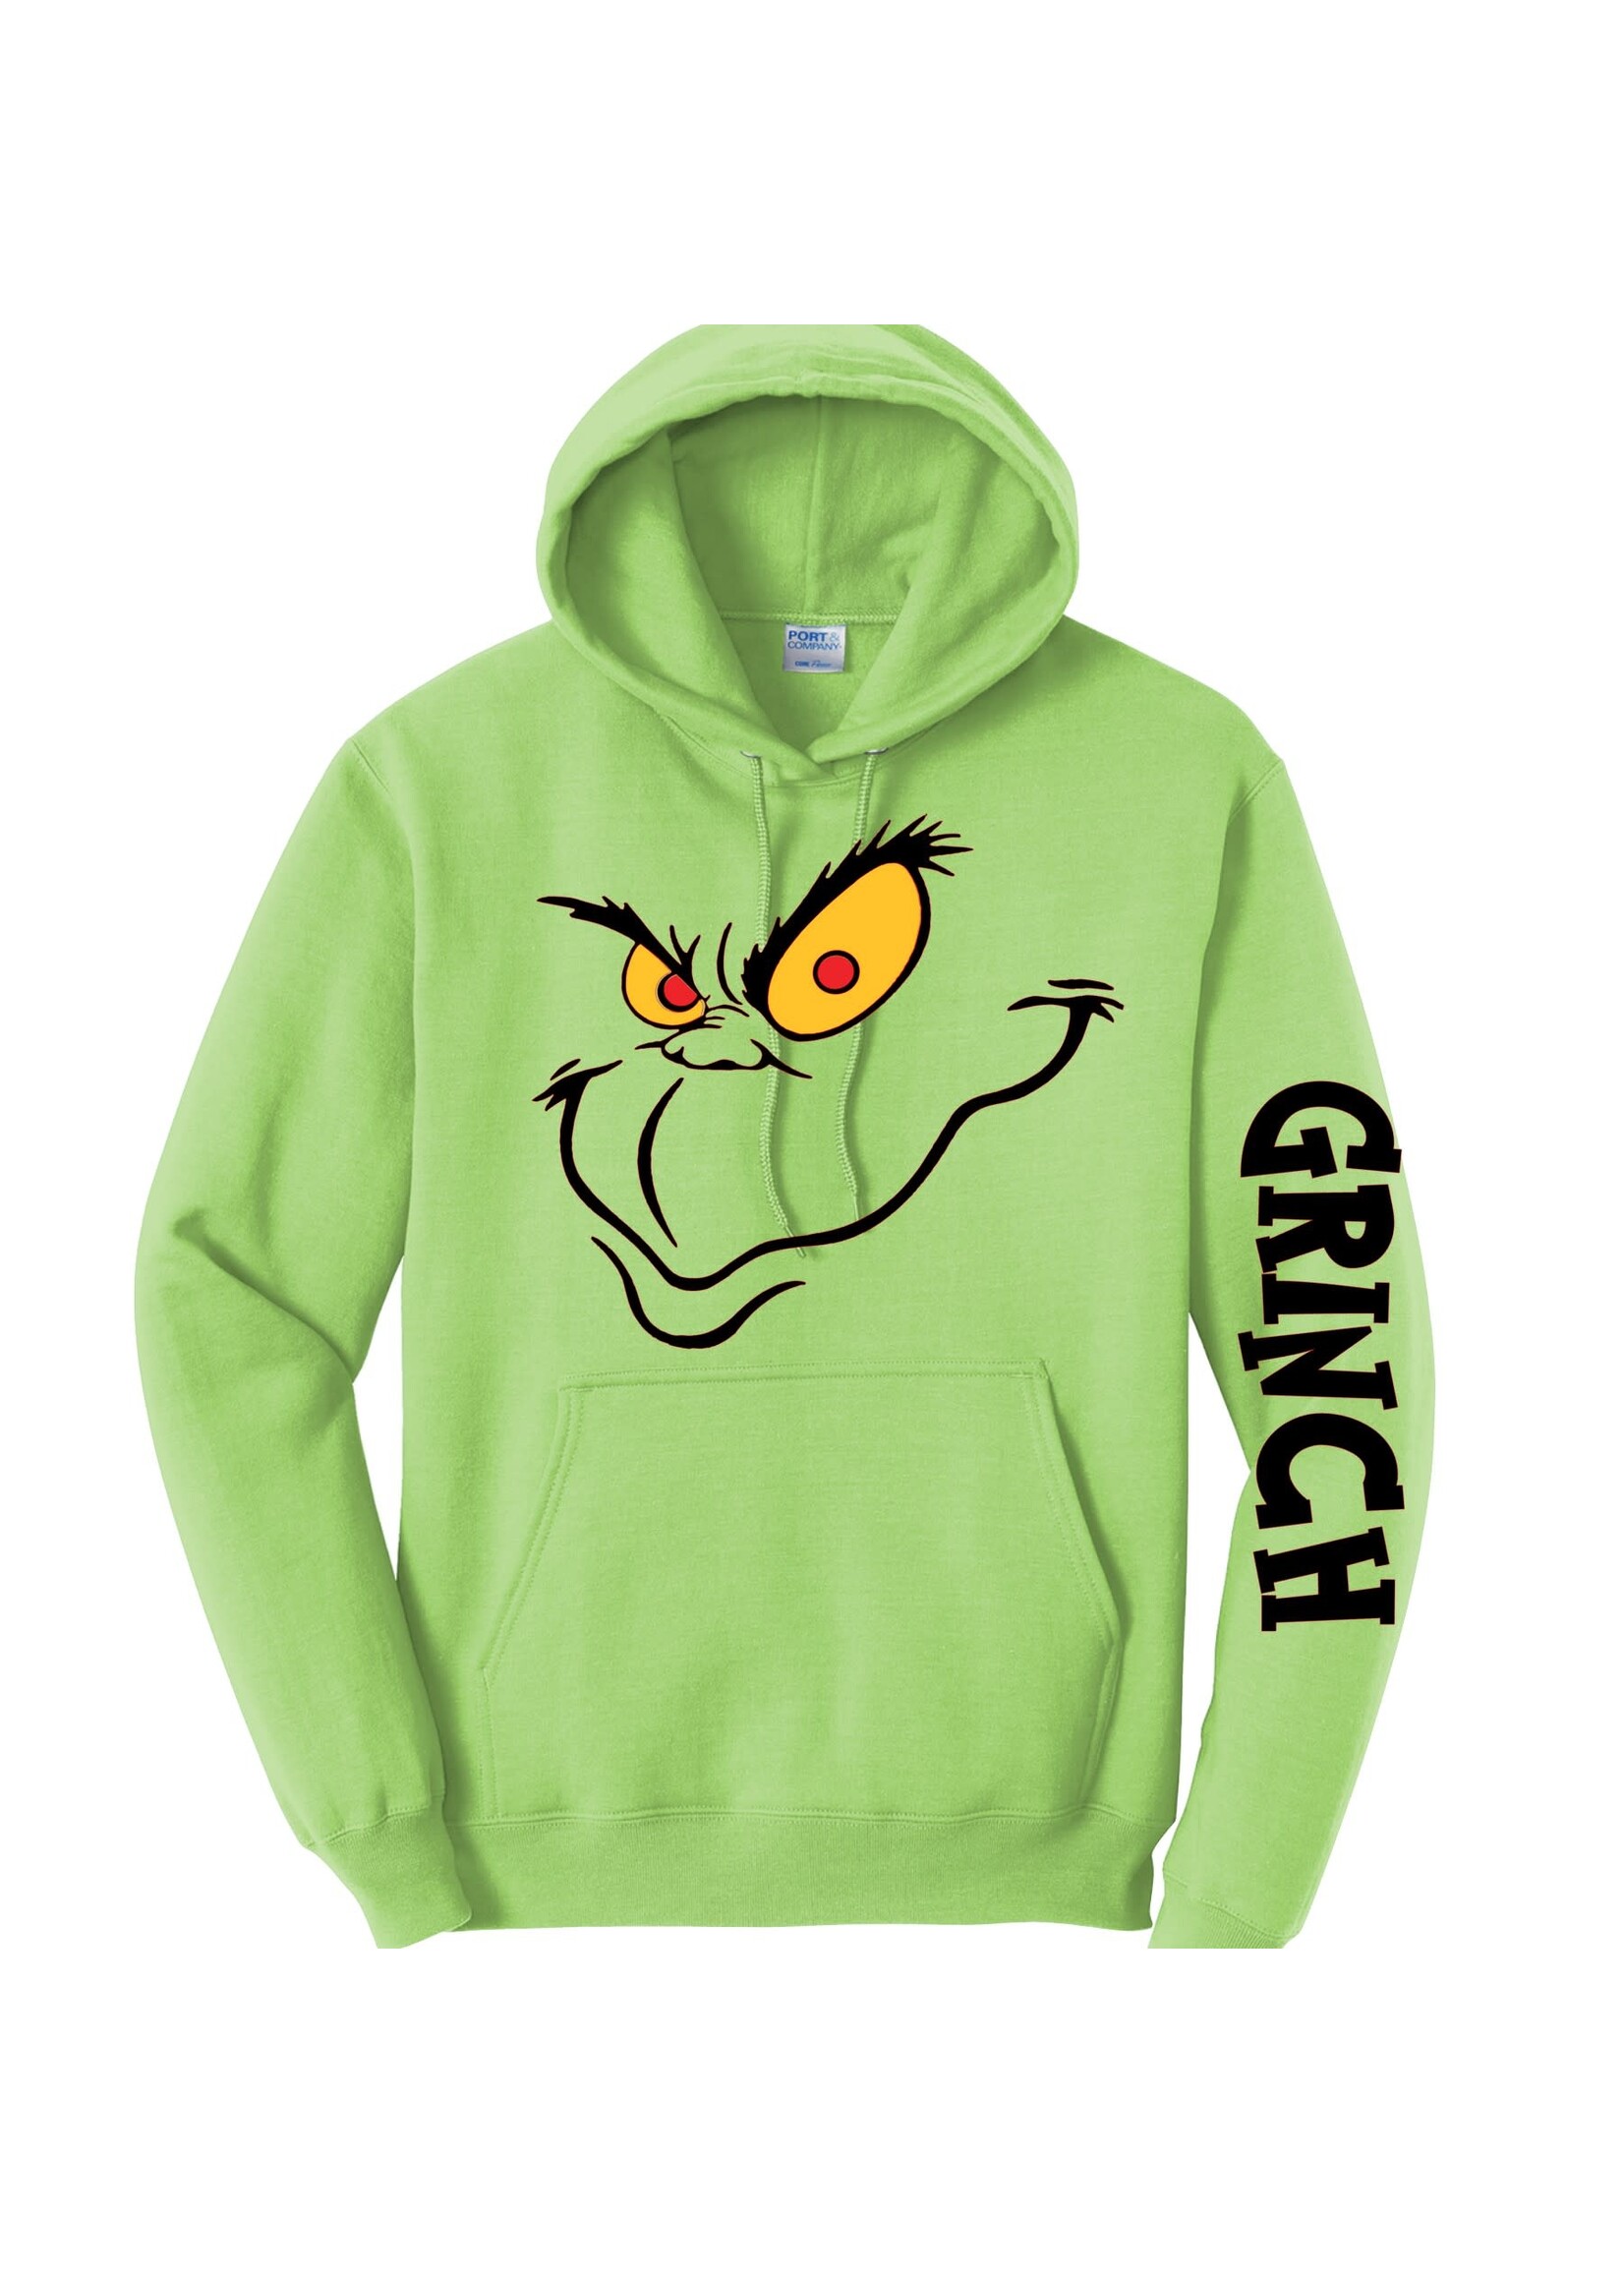 Grinch hoodie